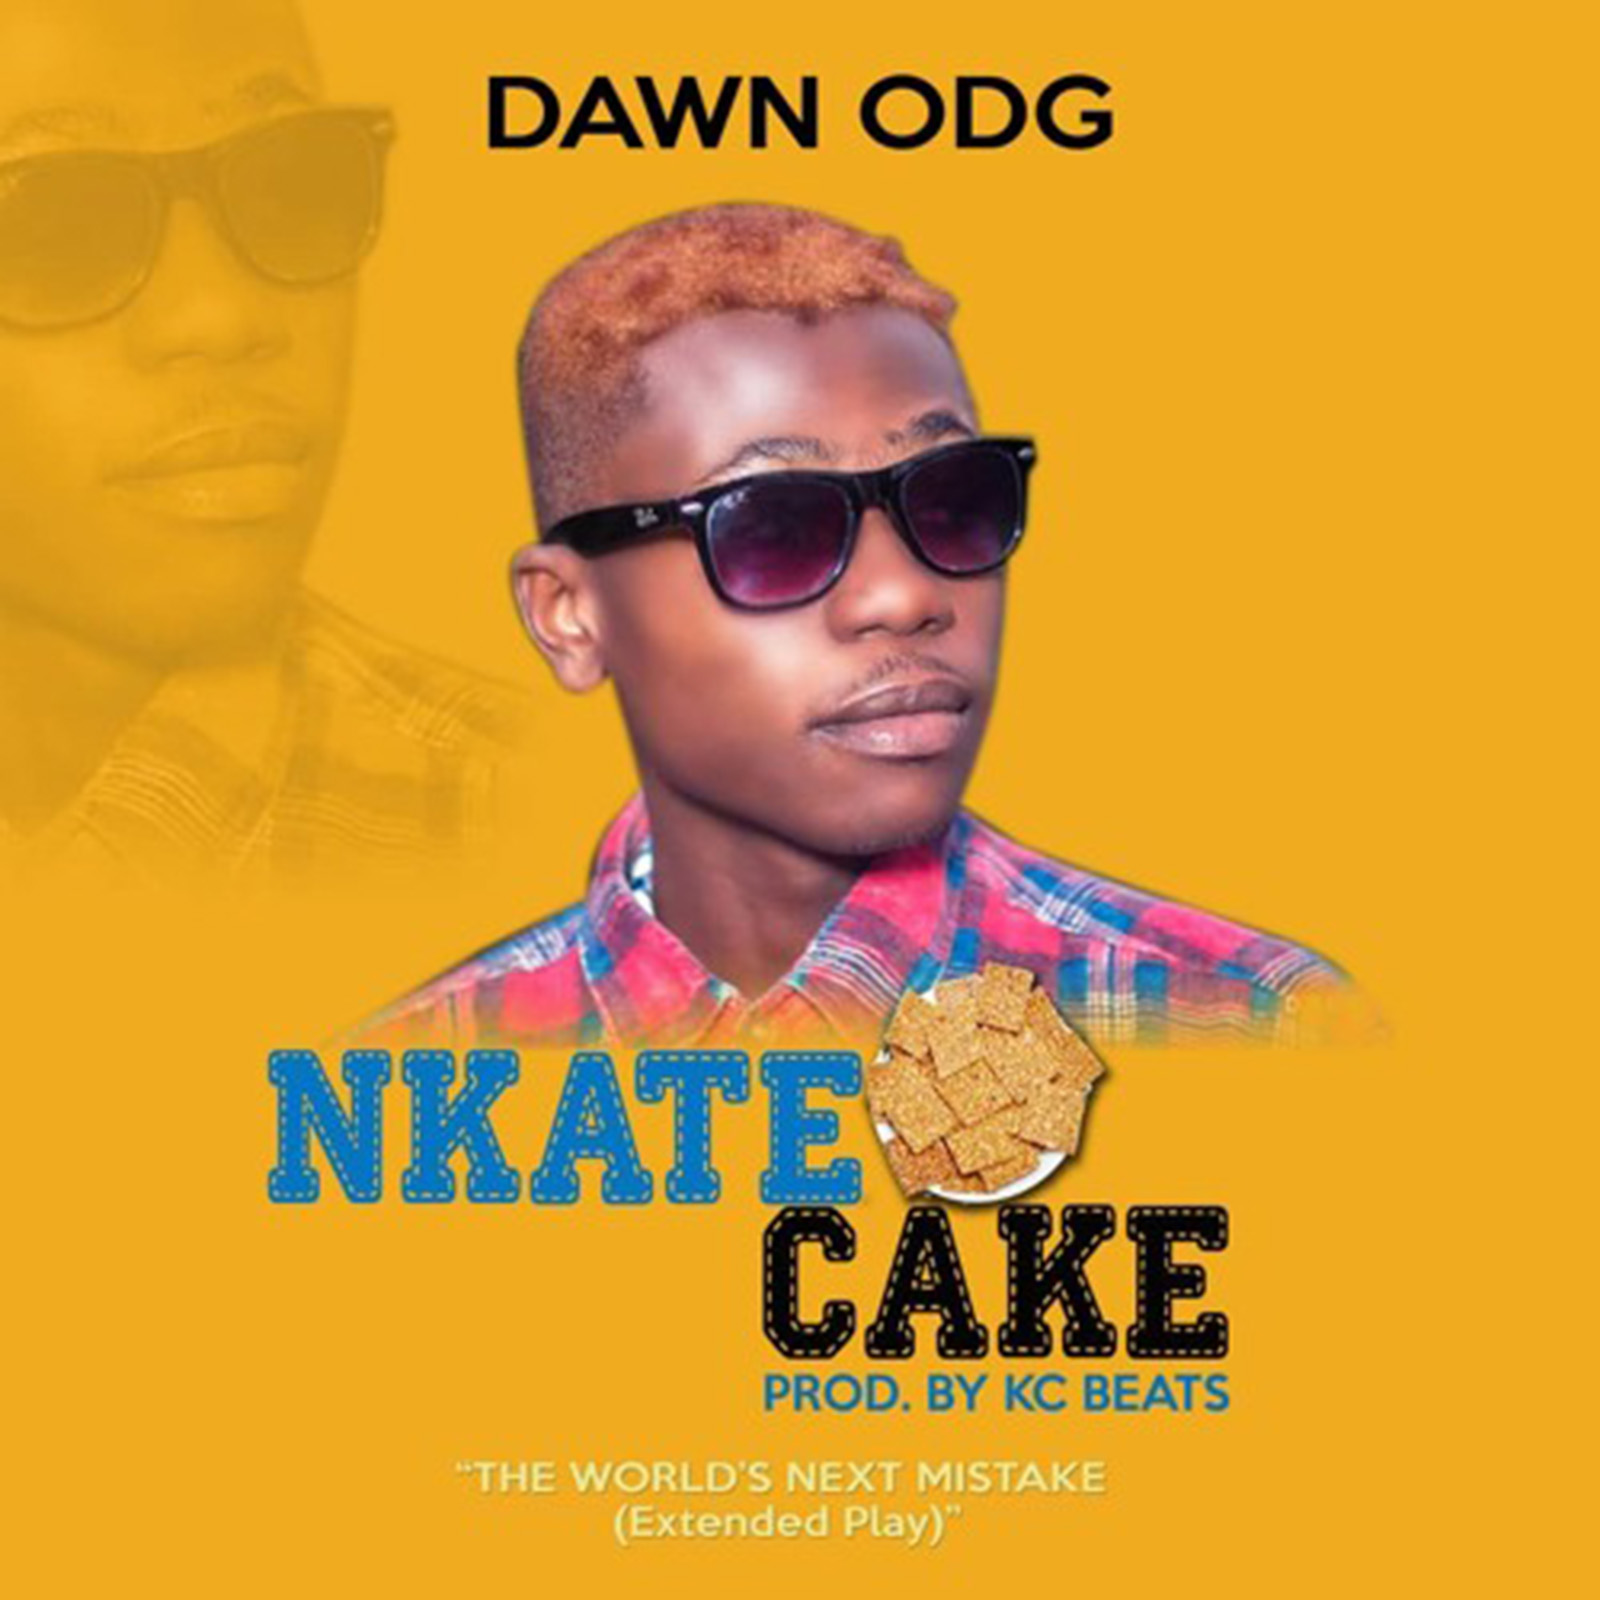 Nkate Cake by Dawn ODG